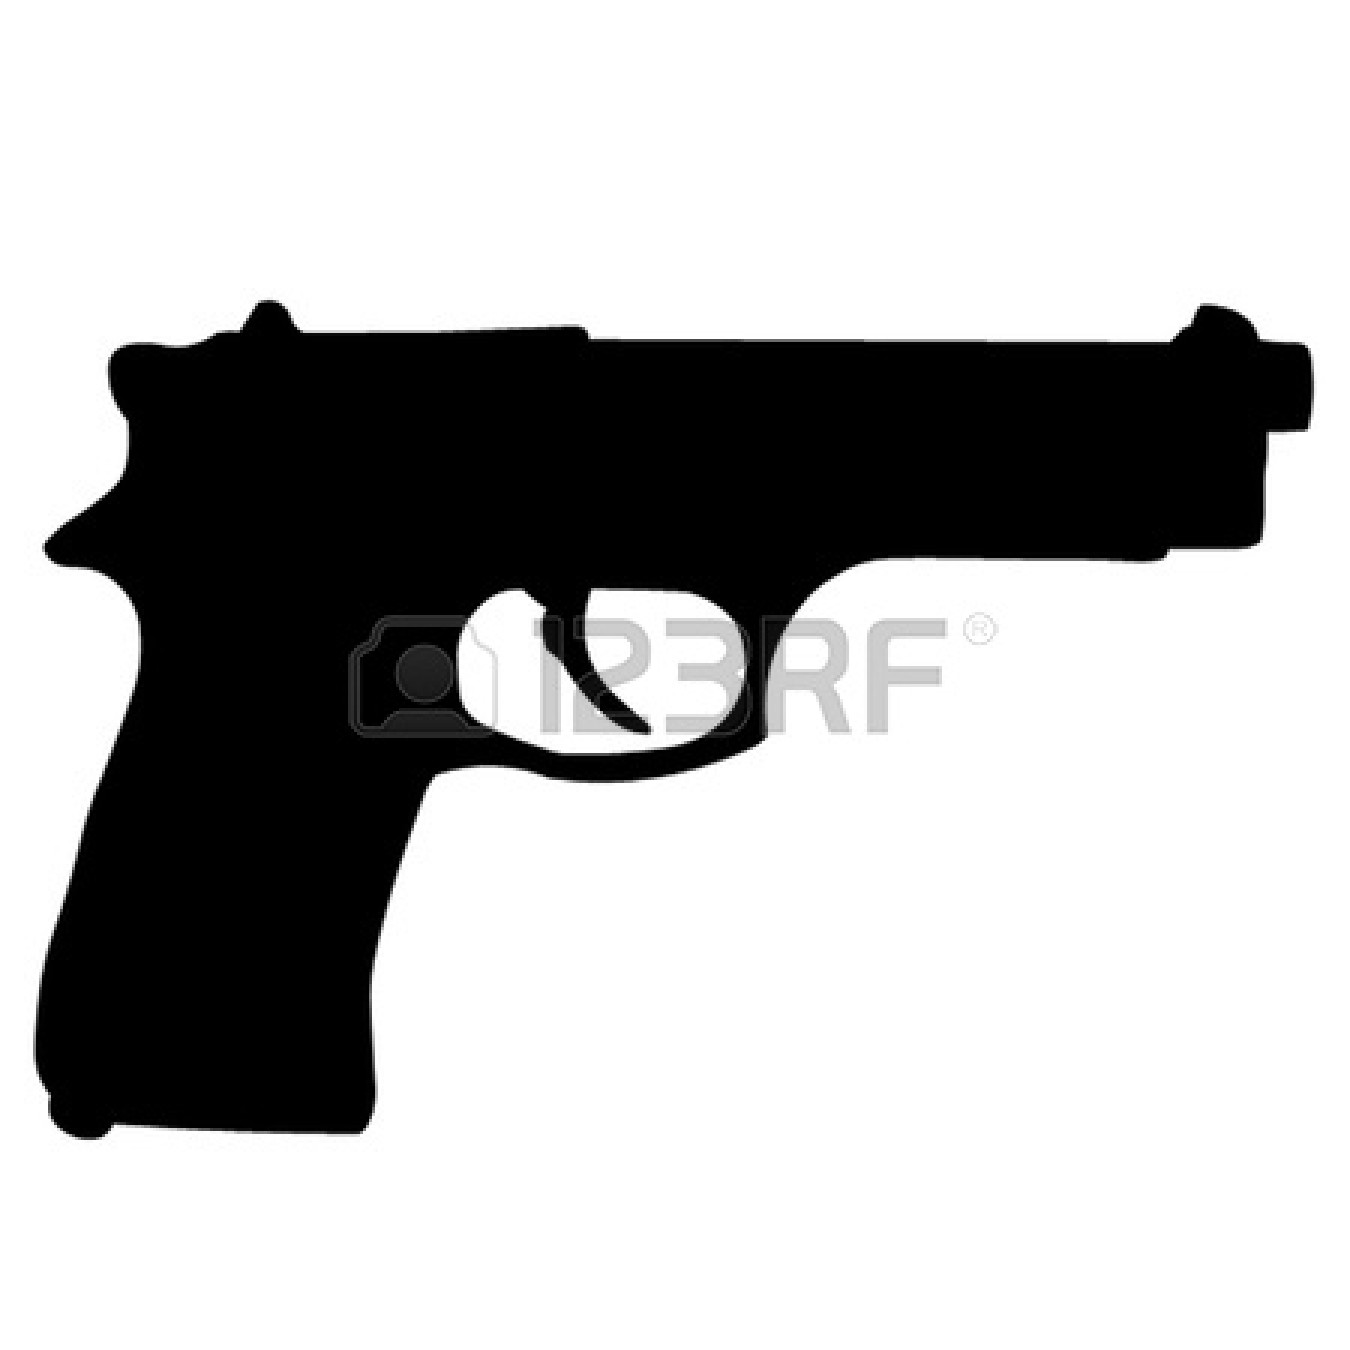 Cartoon gun clipart - Clipart